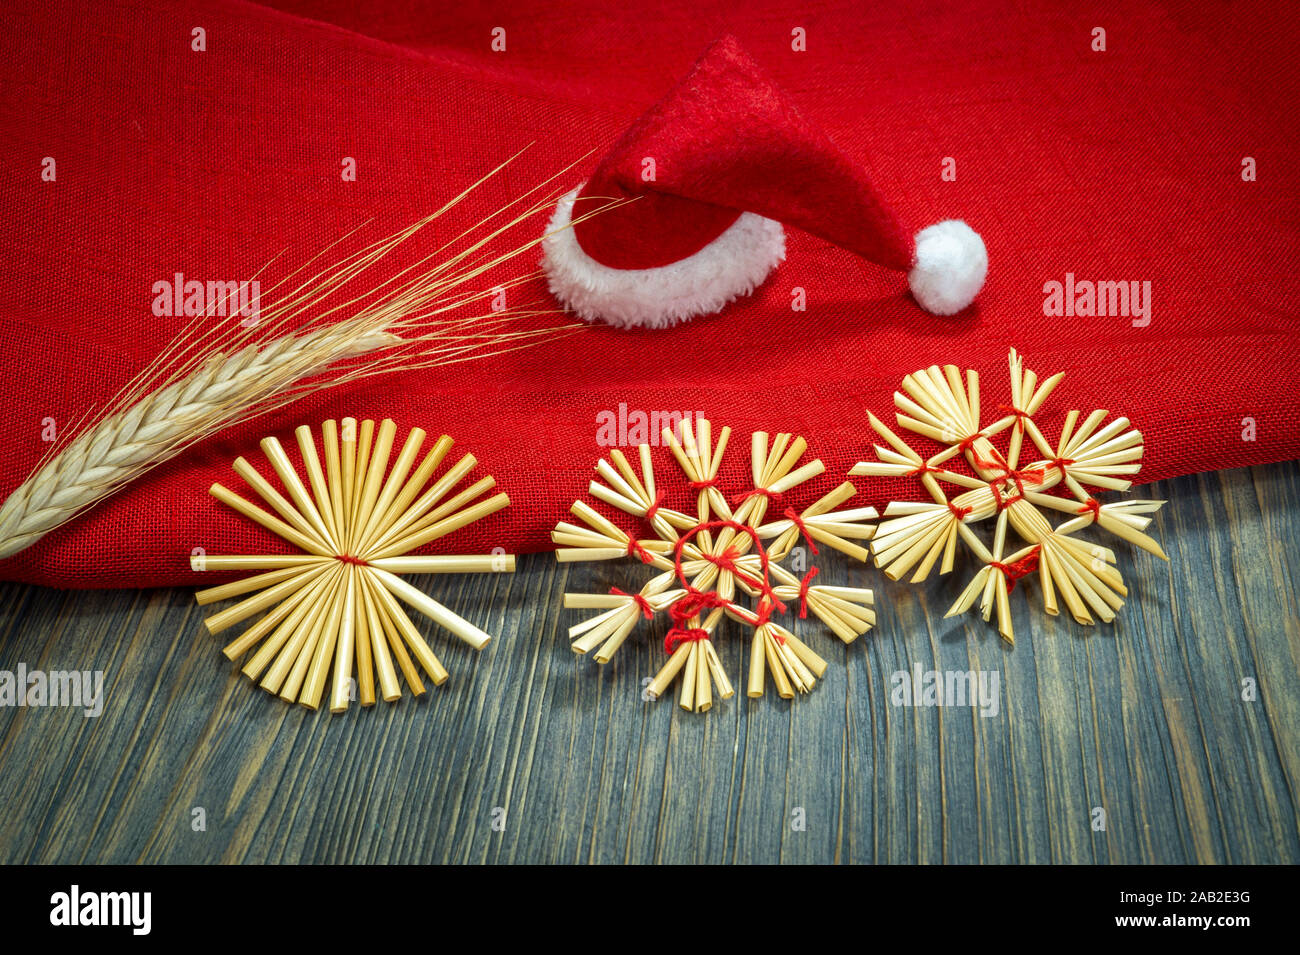 Noël encore la vie rustique avec des ornements de paille, une ambiance festive rouge Santa hat, tissu rouge correspondant et les oreilles de blé d'or sur une zone en bois Banque D'Images